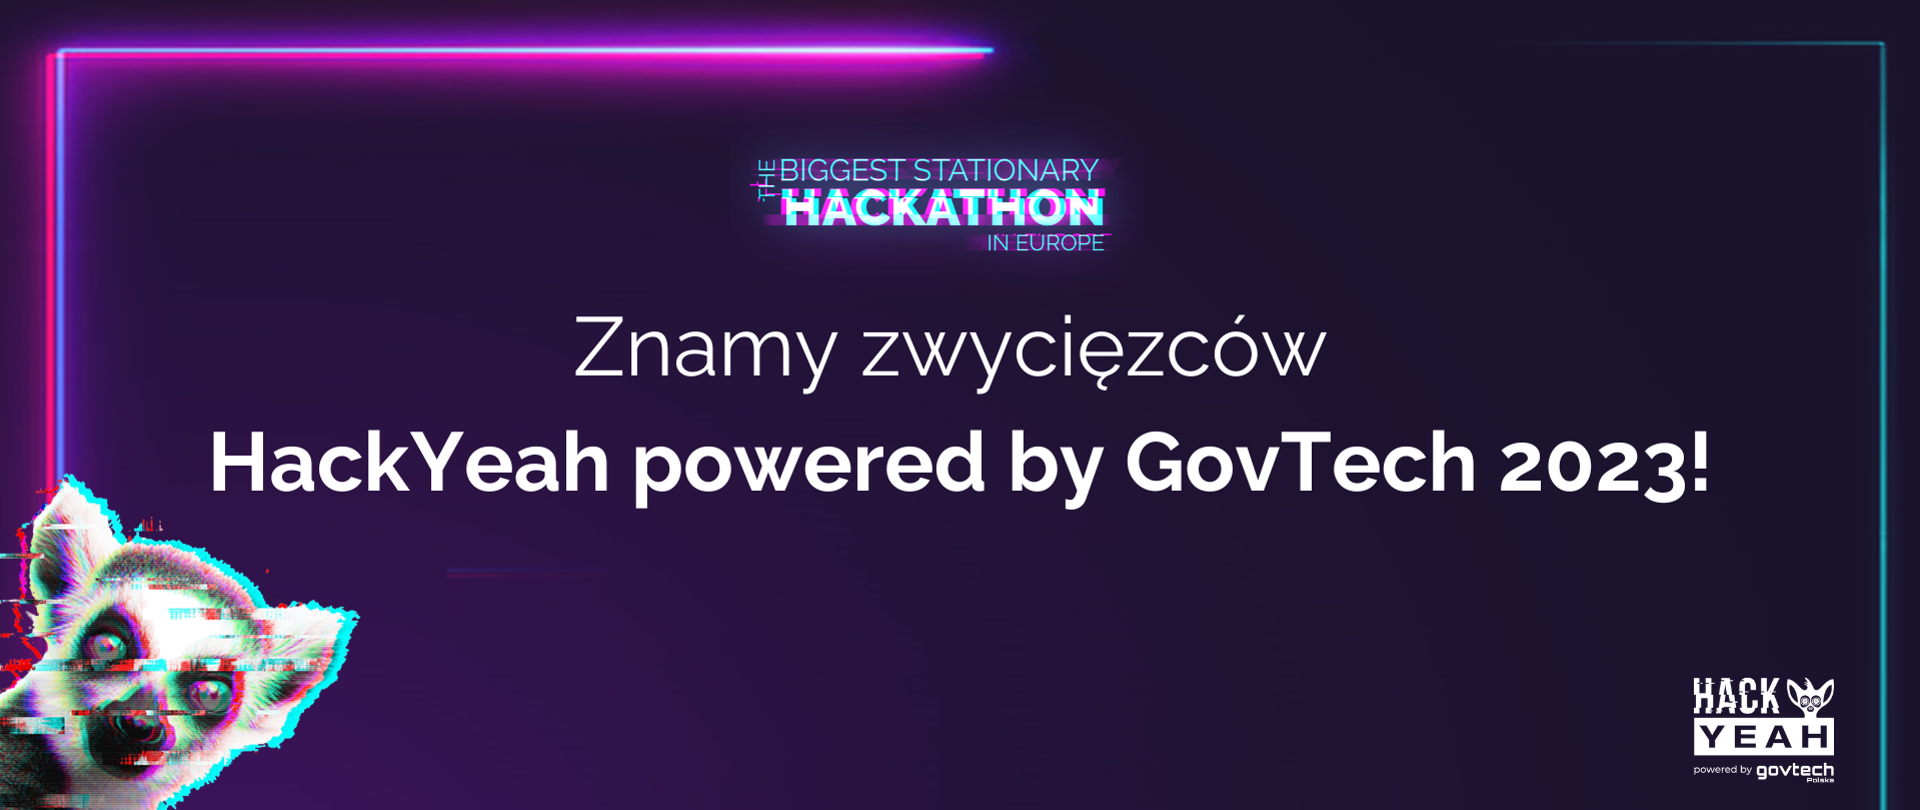 Znamy zwycięzców
HackYeah powered by GovTech 2023